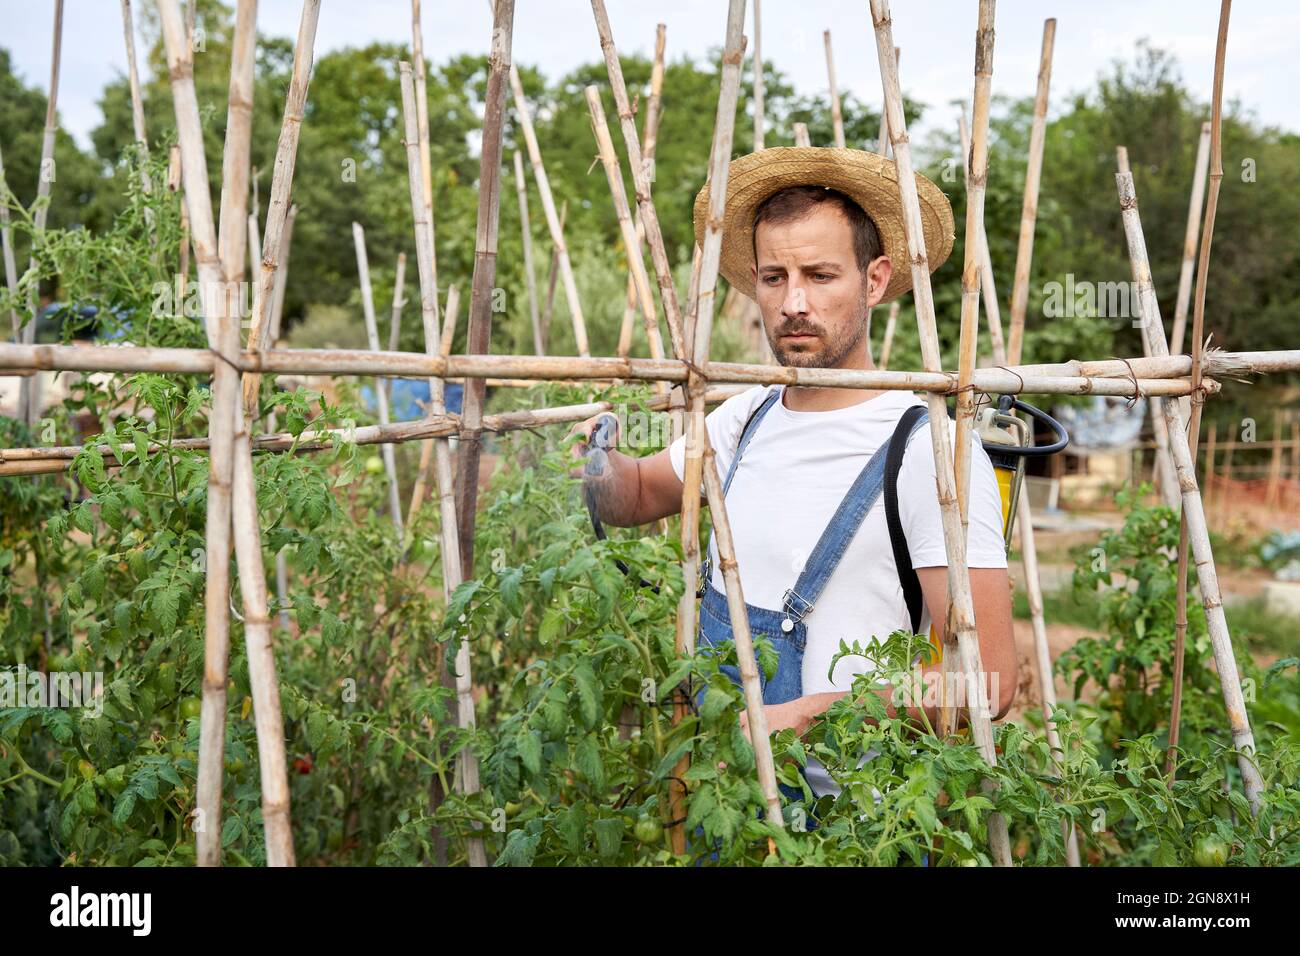 Un agriculteur de sexe masculin pulvérise des pesticides sur les plantes tout en travaillant dans un champ agricole Banque D'Images